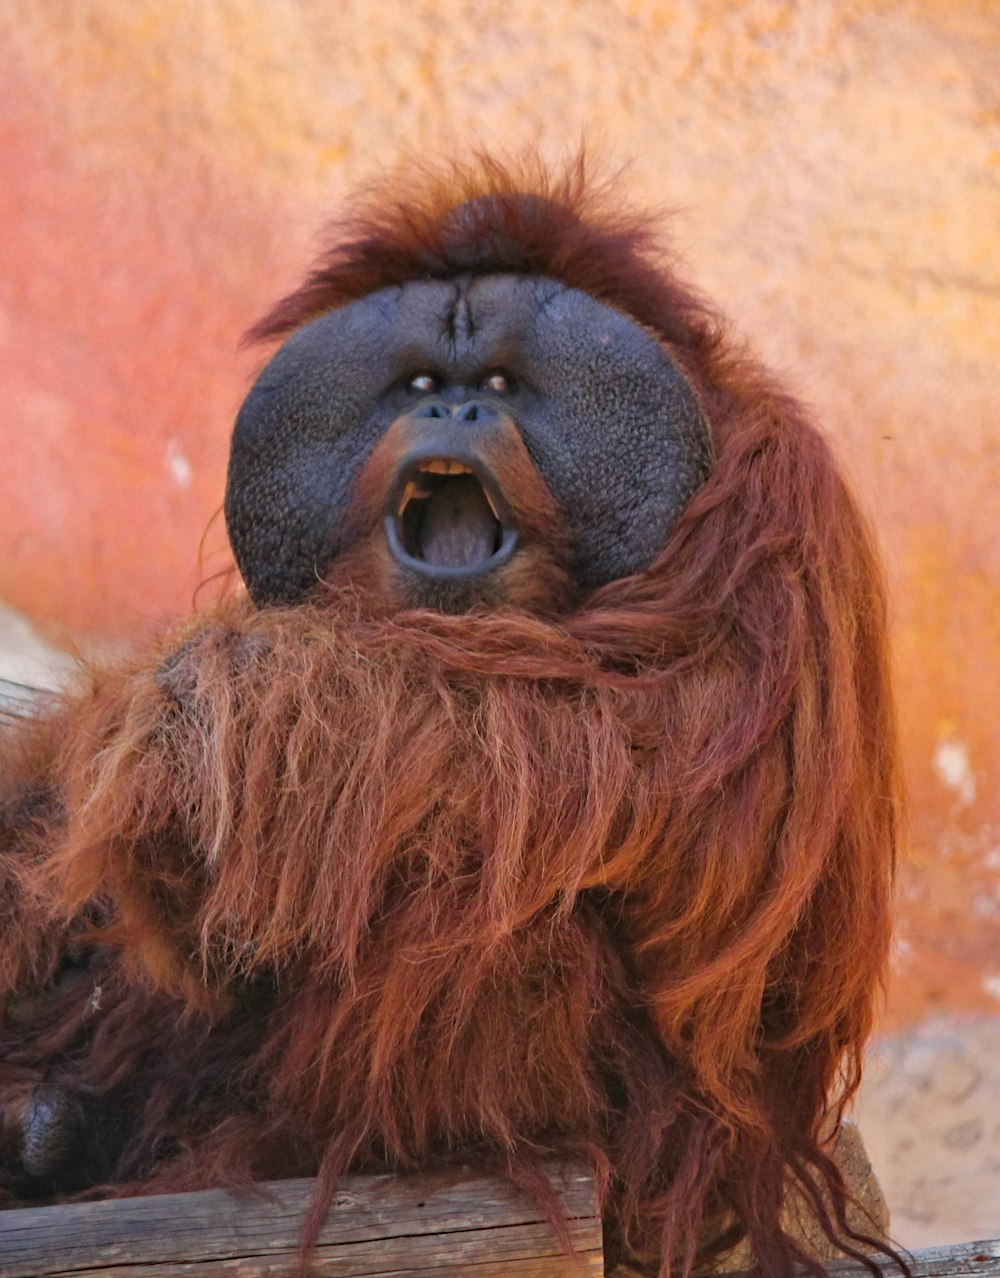 orangutan sitting on wood